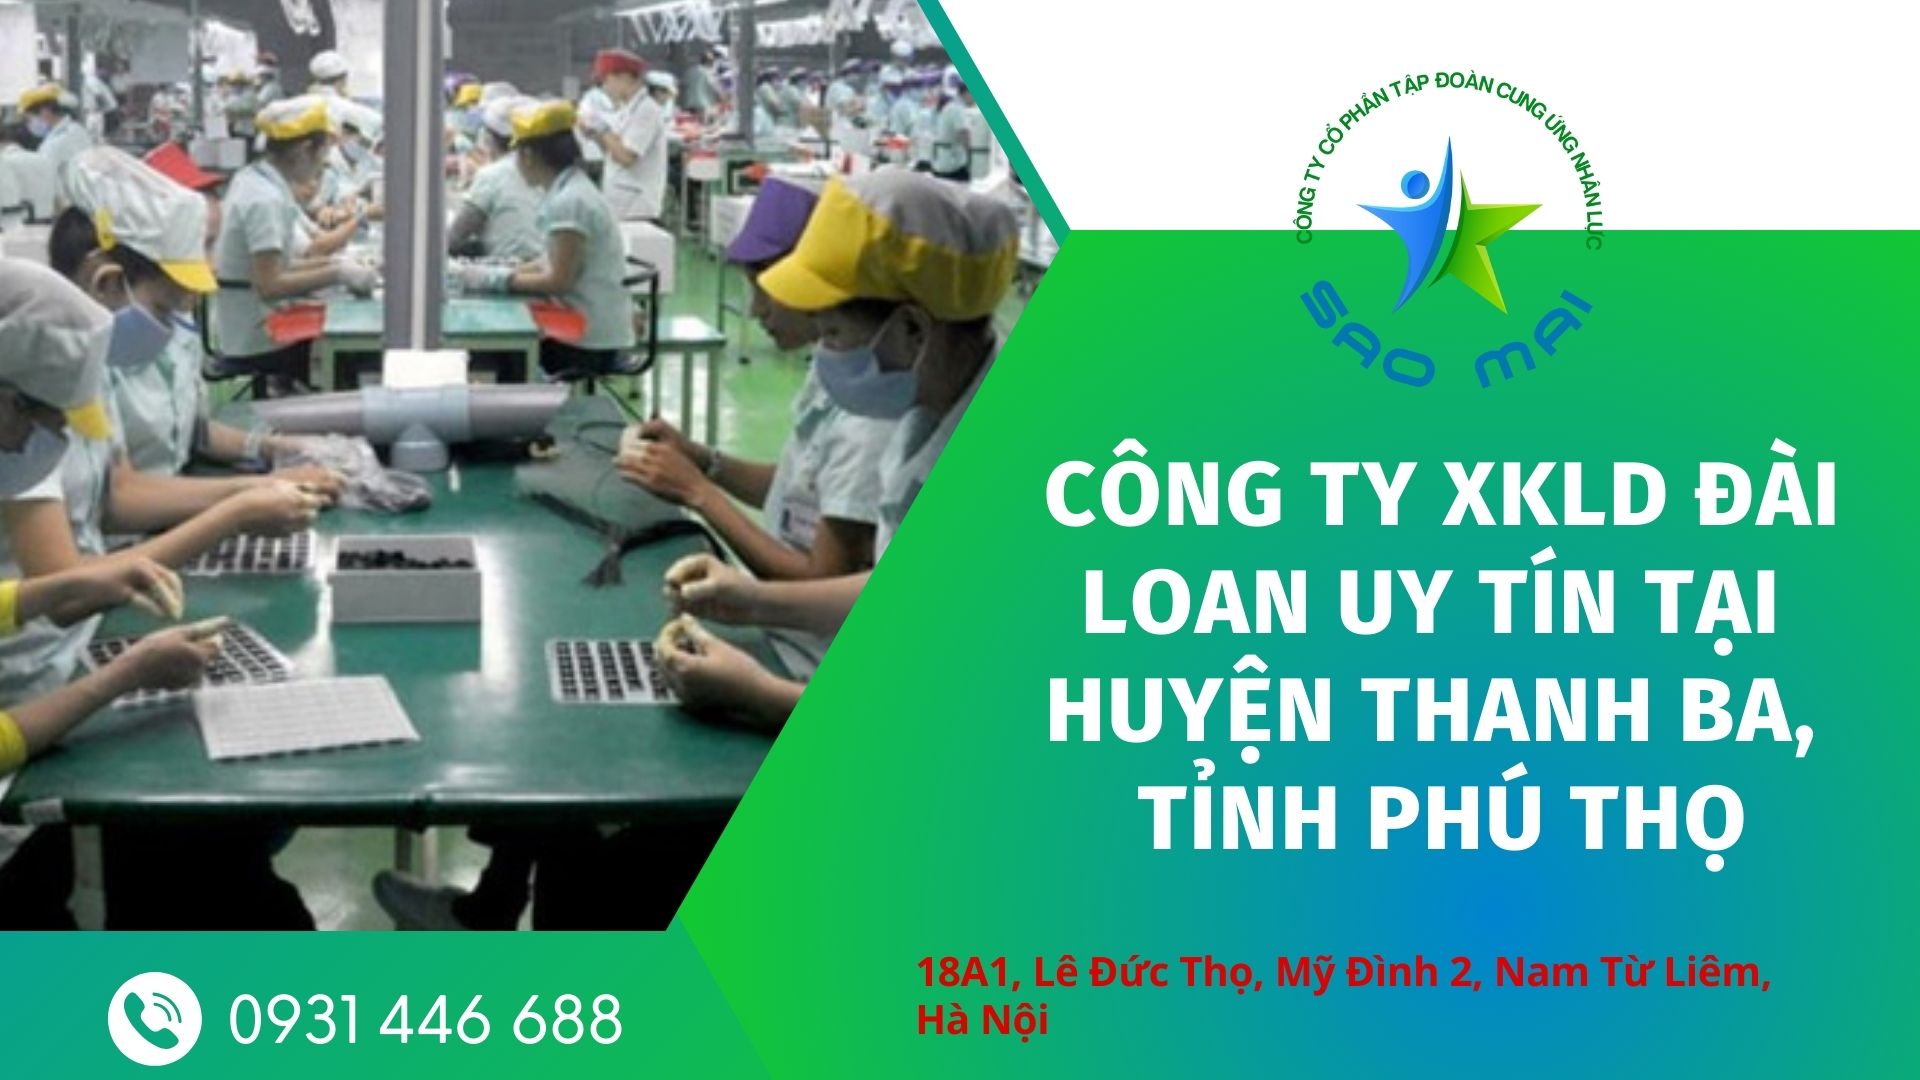 Công ty xuất khẩu lao động Đài Loan uy tín, chi phí thấp tại huyện THANH BA, tỉnh PHÚ THỌ